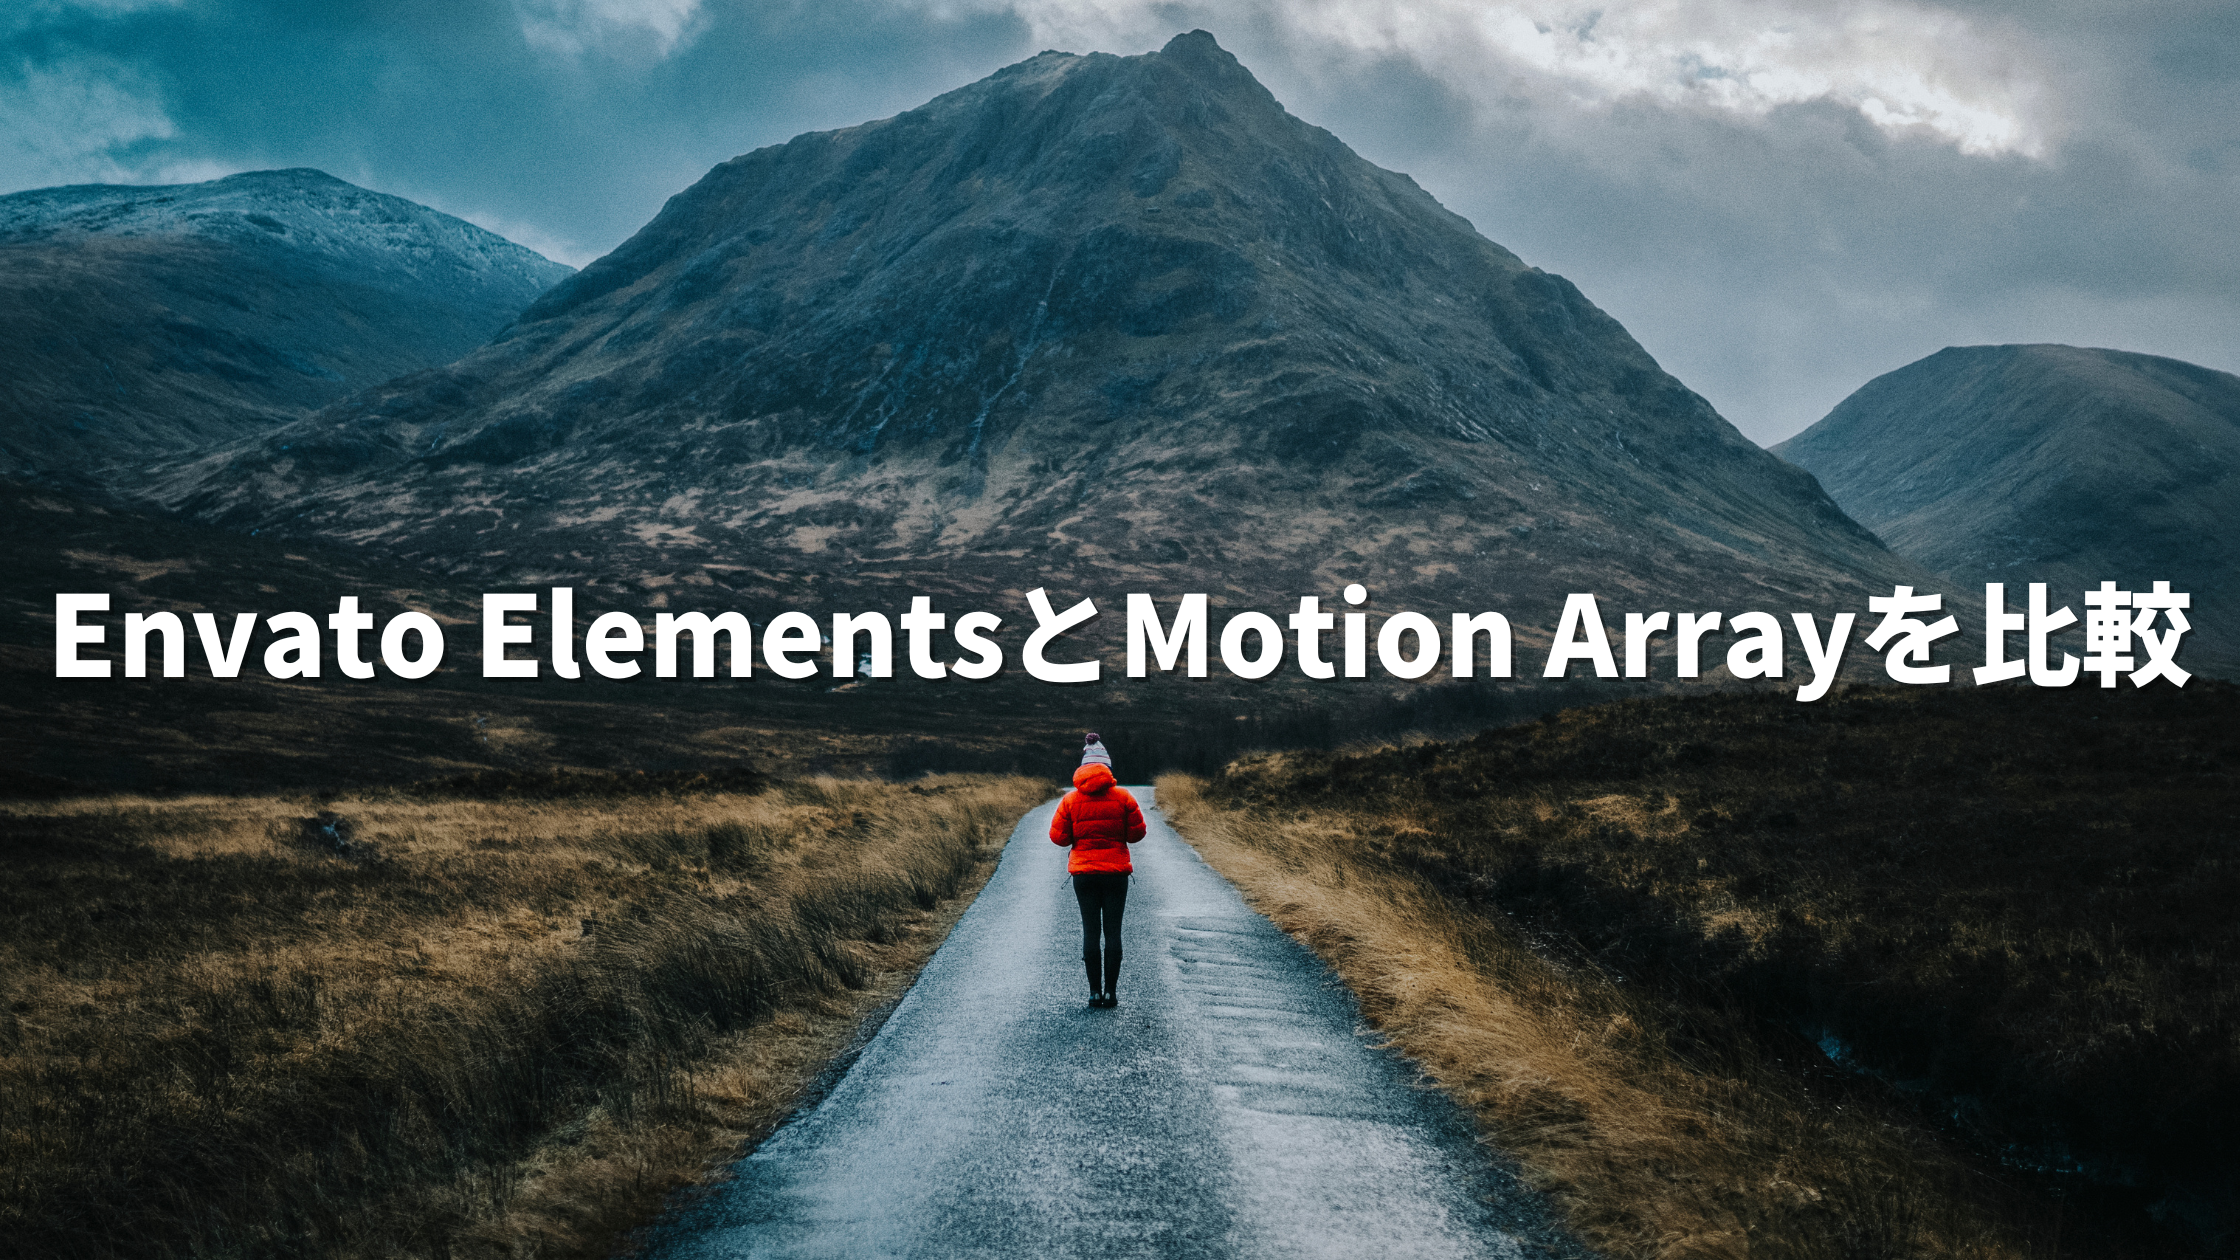 Envato Elements Motion Array 比較